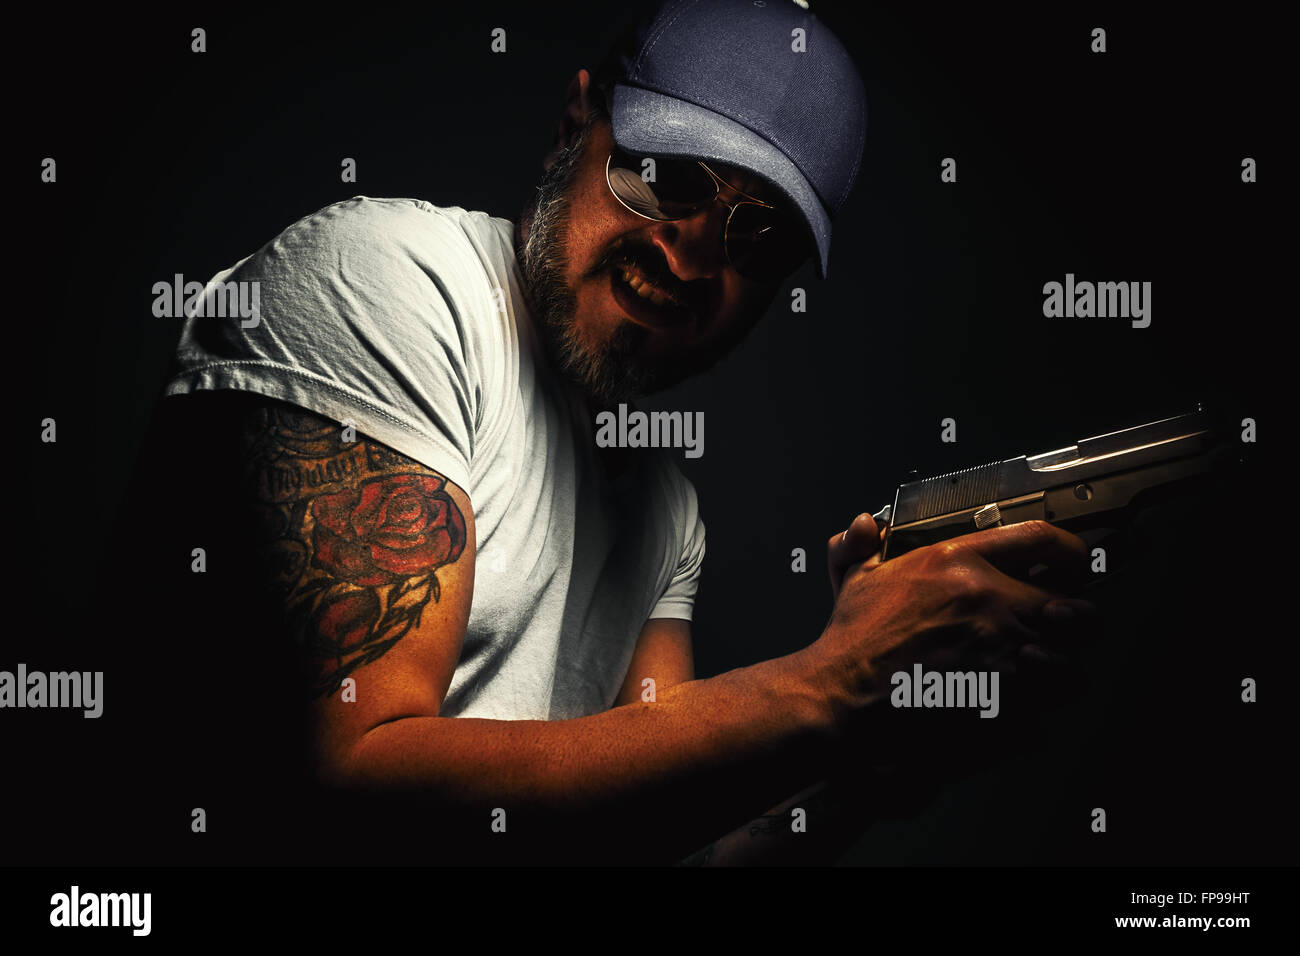 Gesichtsausdruck von einem Mann mit Gewehr und Tätowierung. Stockfoto